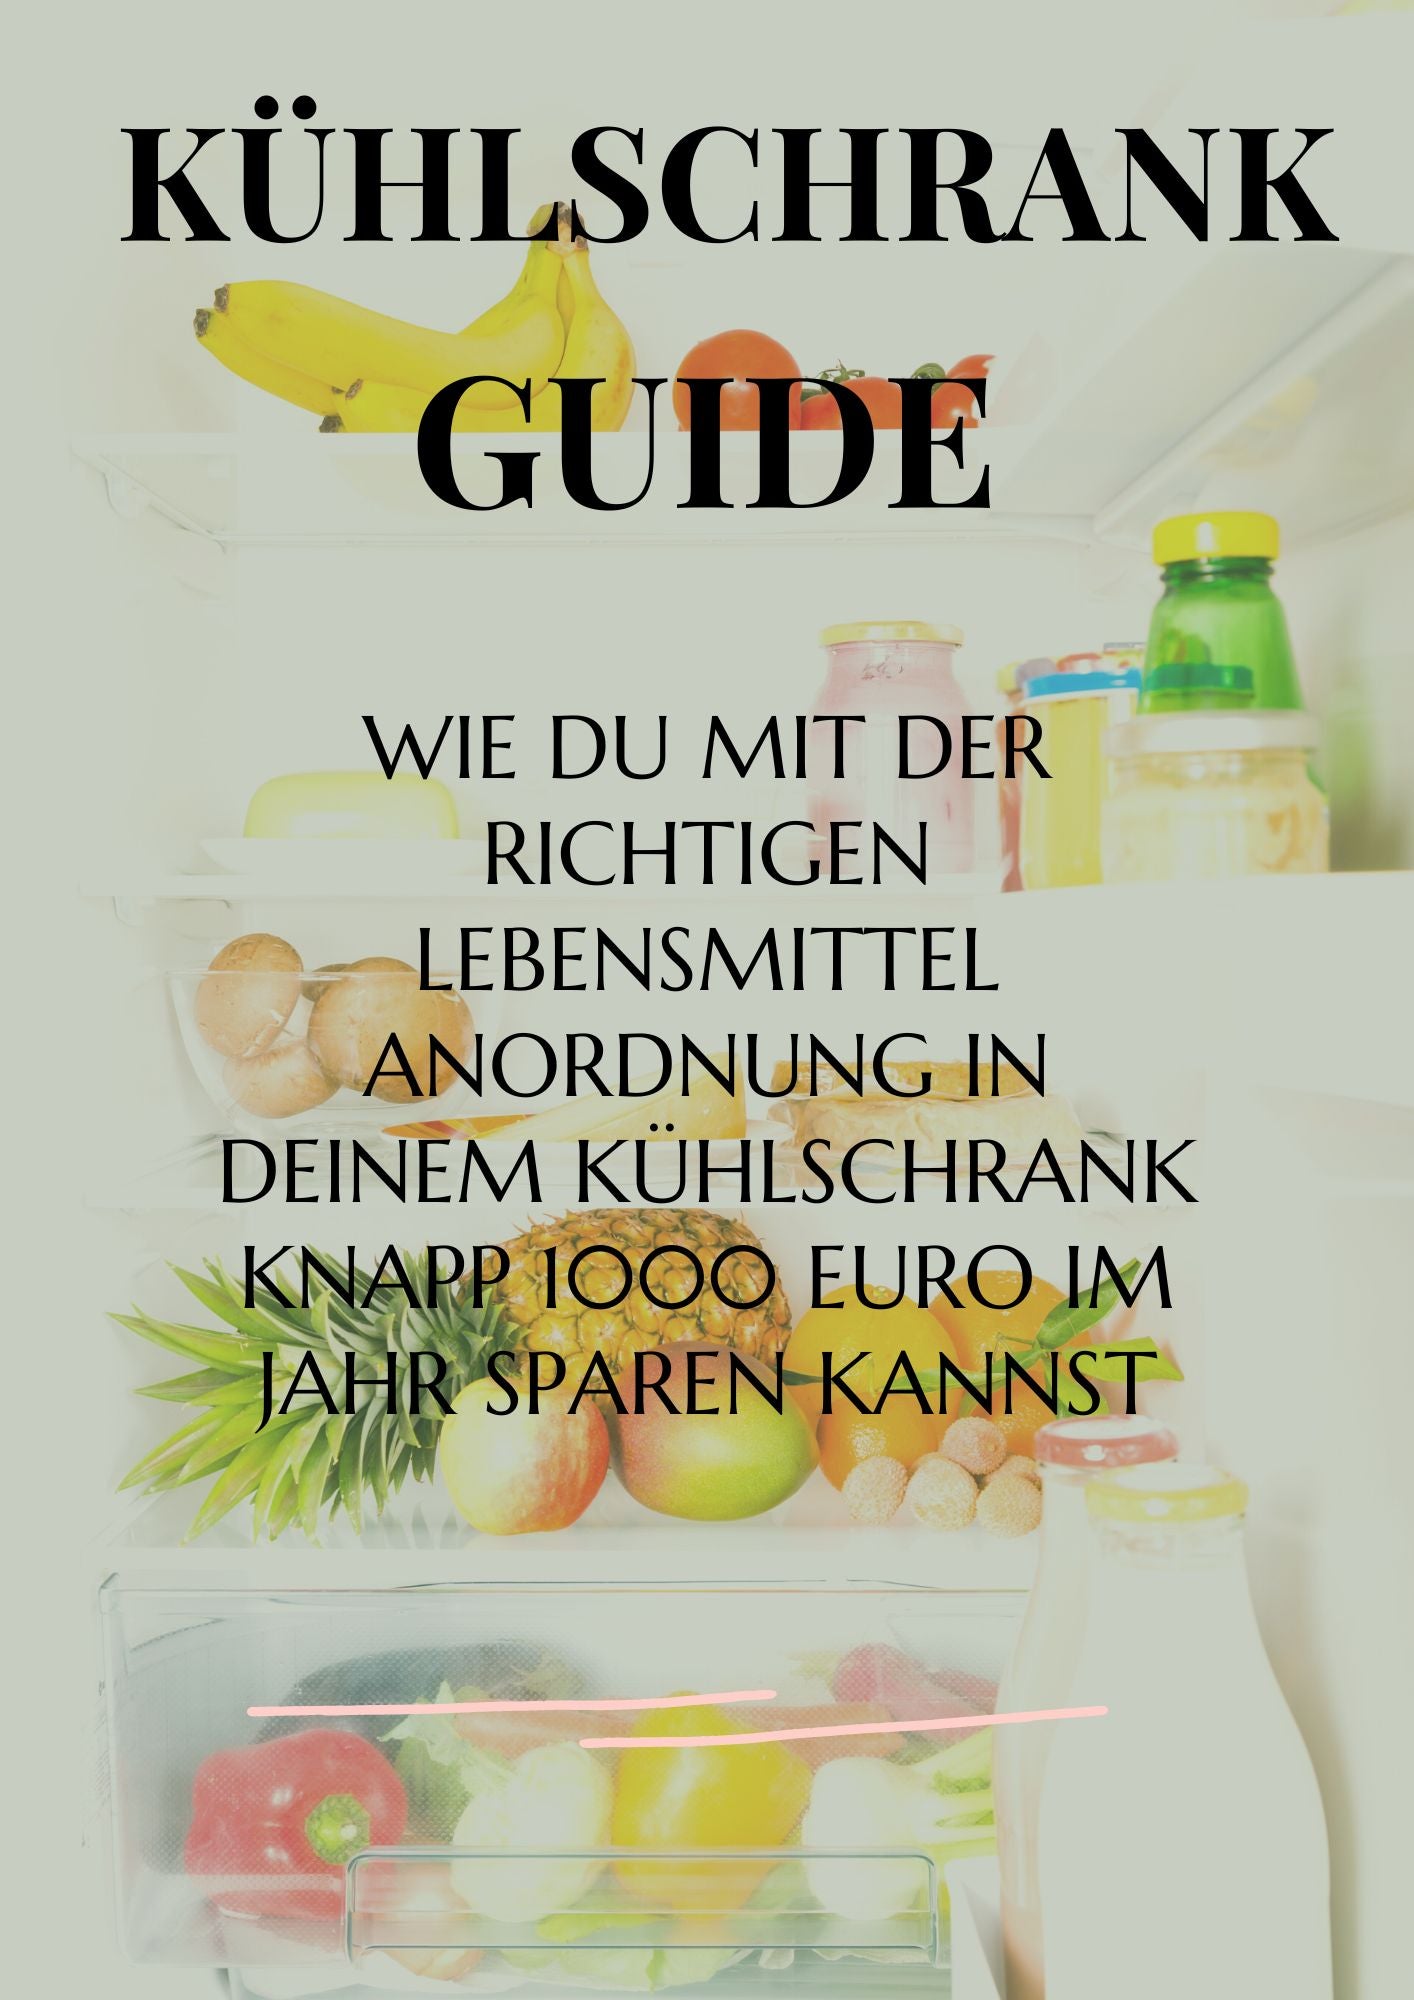 Kühlschrank Guide